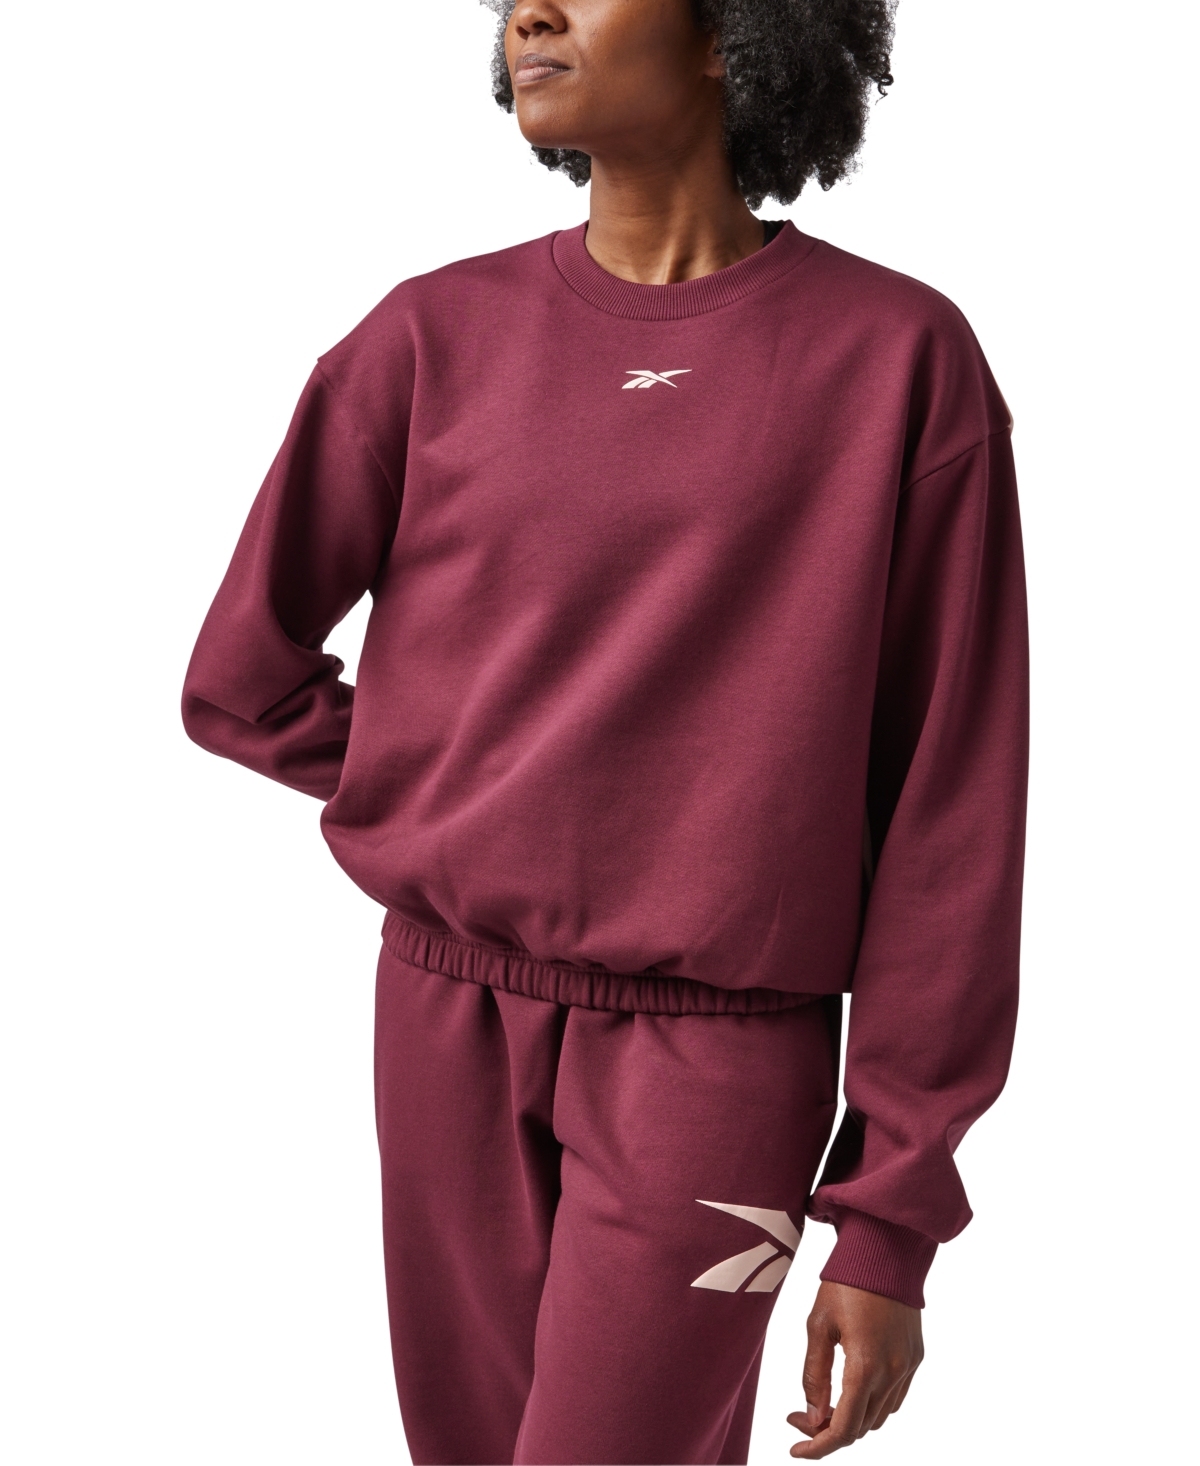 Reebok Women's Back Vector Fleece Sweatshirt, A Macy's Exclusive In Classic Maroon